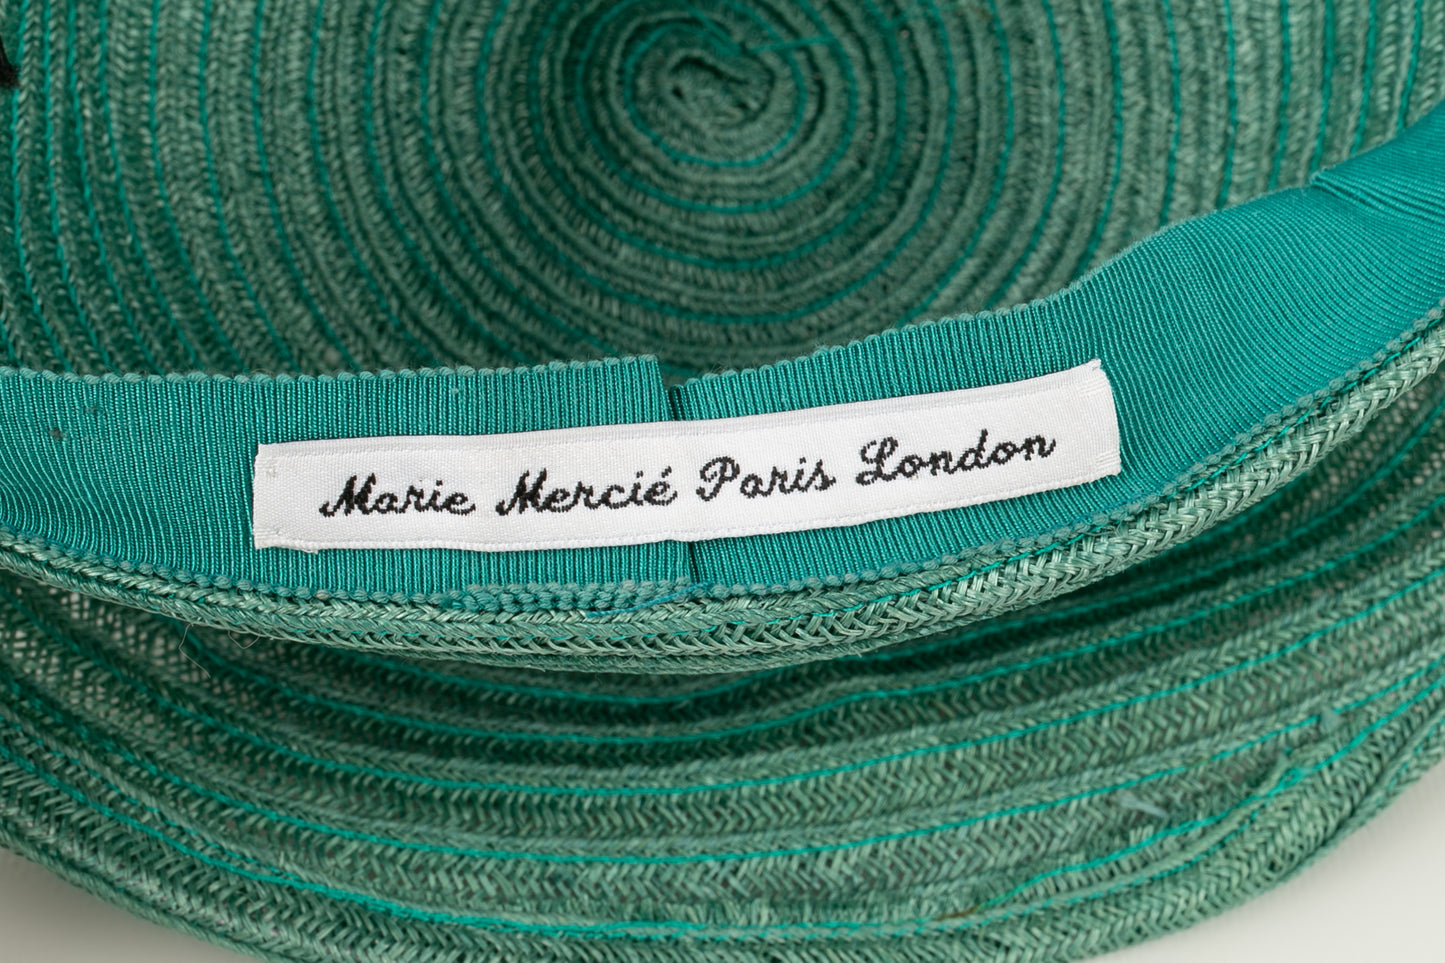 Chapeau Marie Mercié